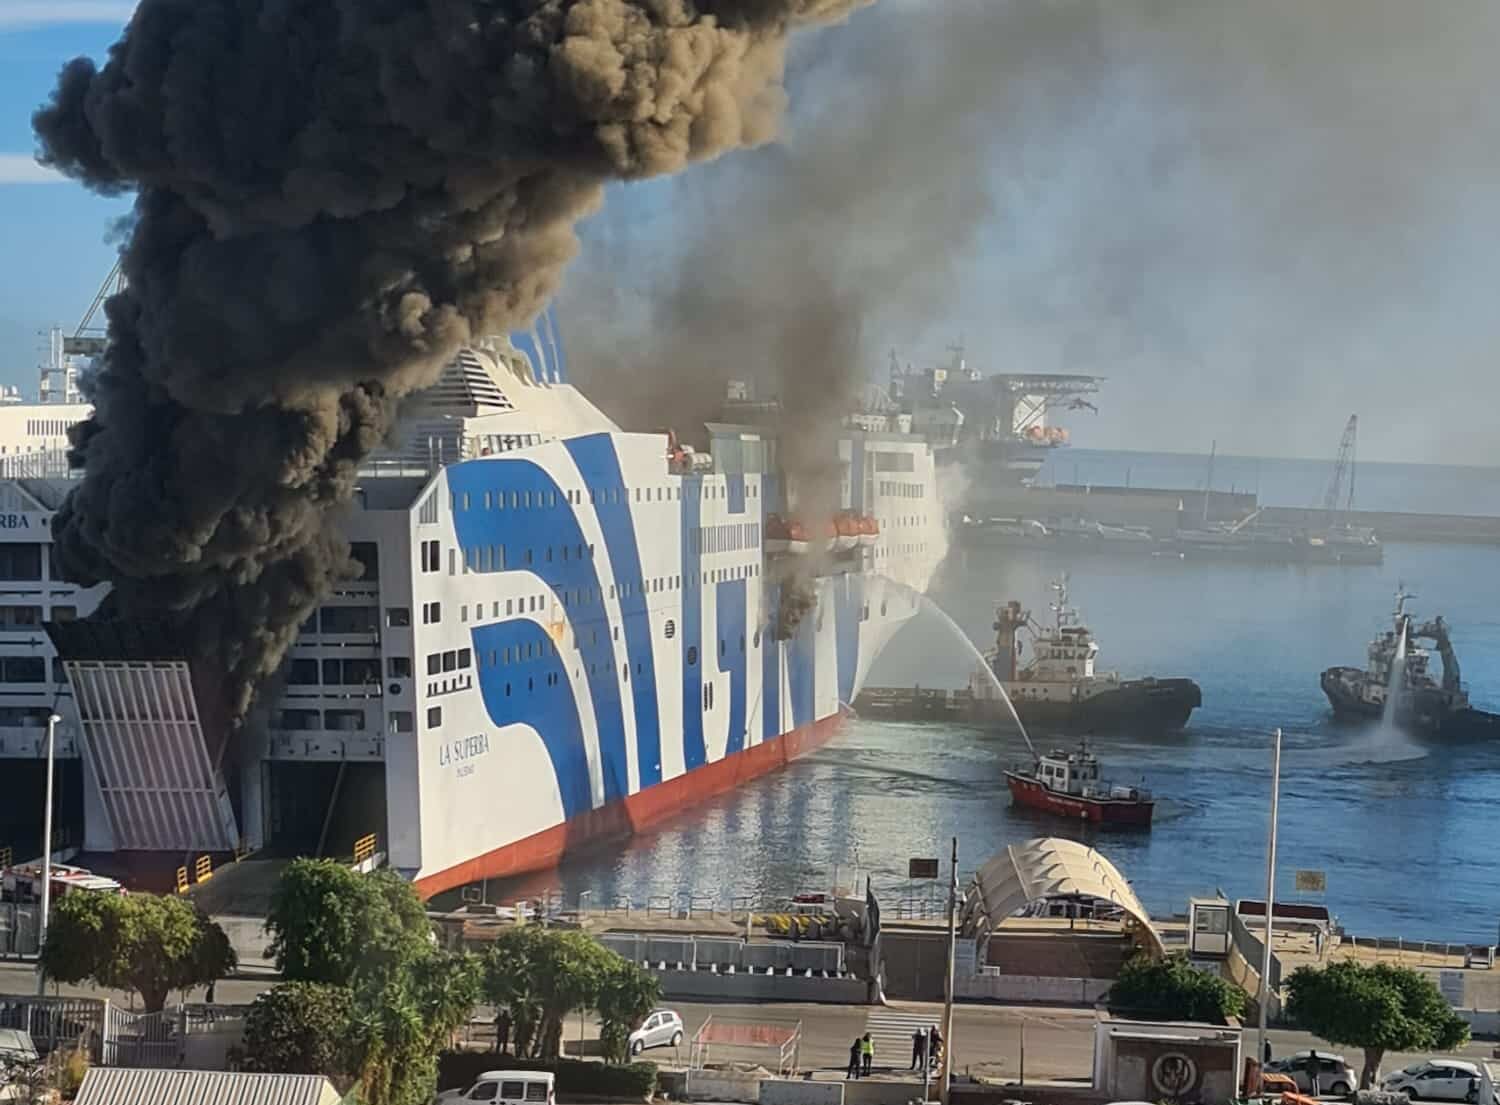 “Cappa tossica in città”, ancora fumo post incendio sul traghetto Napoli-Palermo: FOTO, VIDEO e TESTIMONIANZE